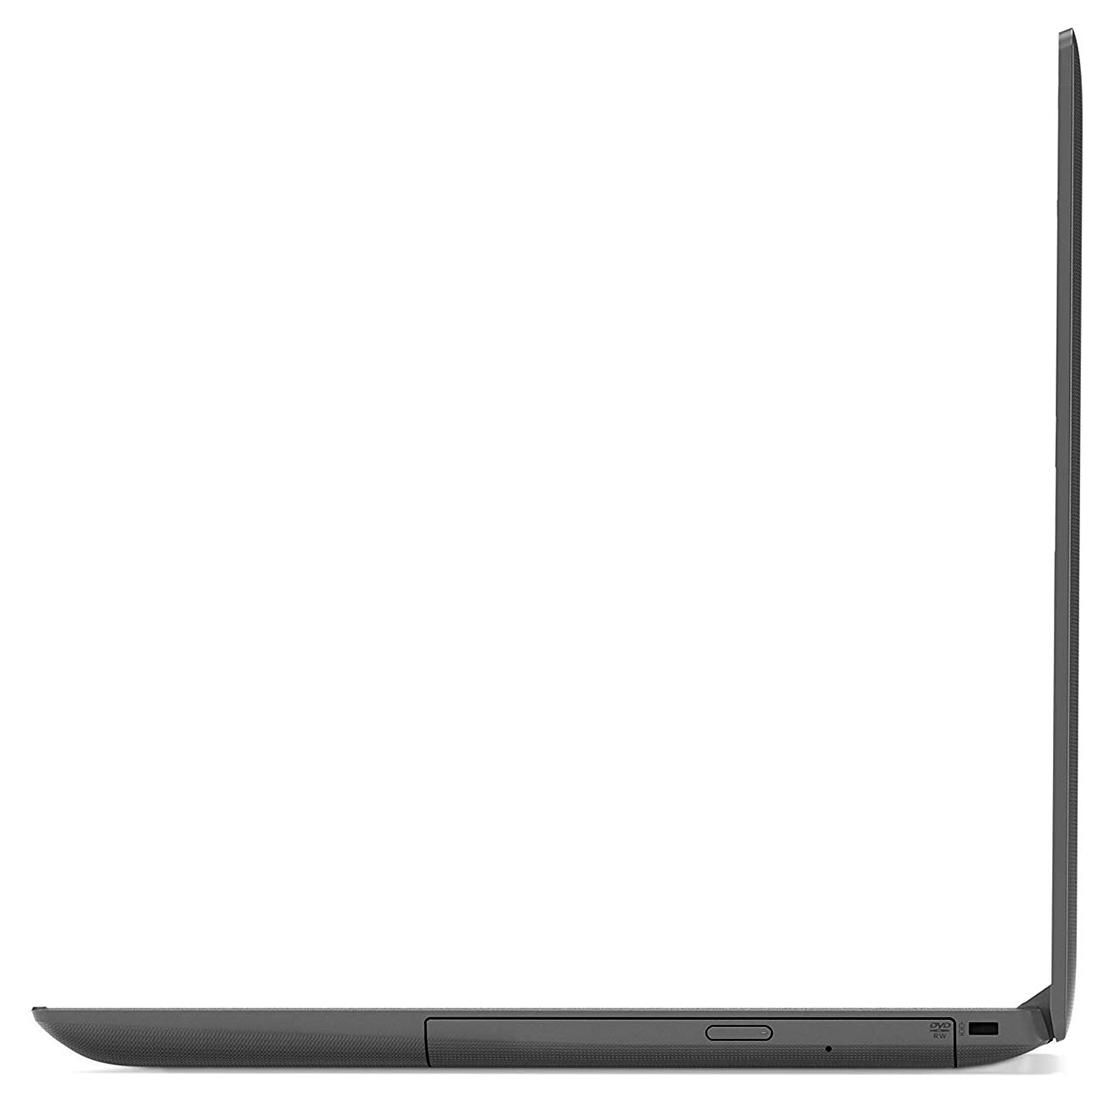 لپ تاپ لنوو Lenovo IP130